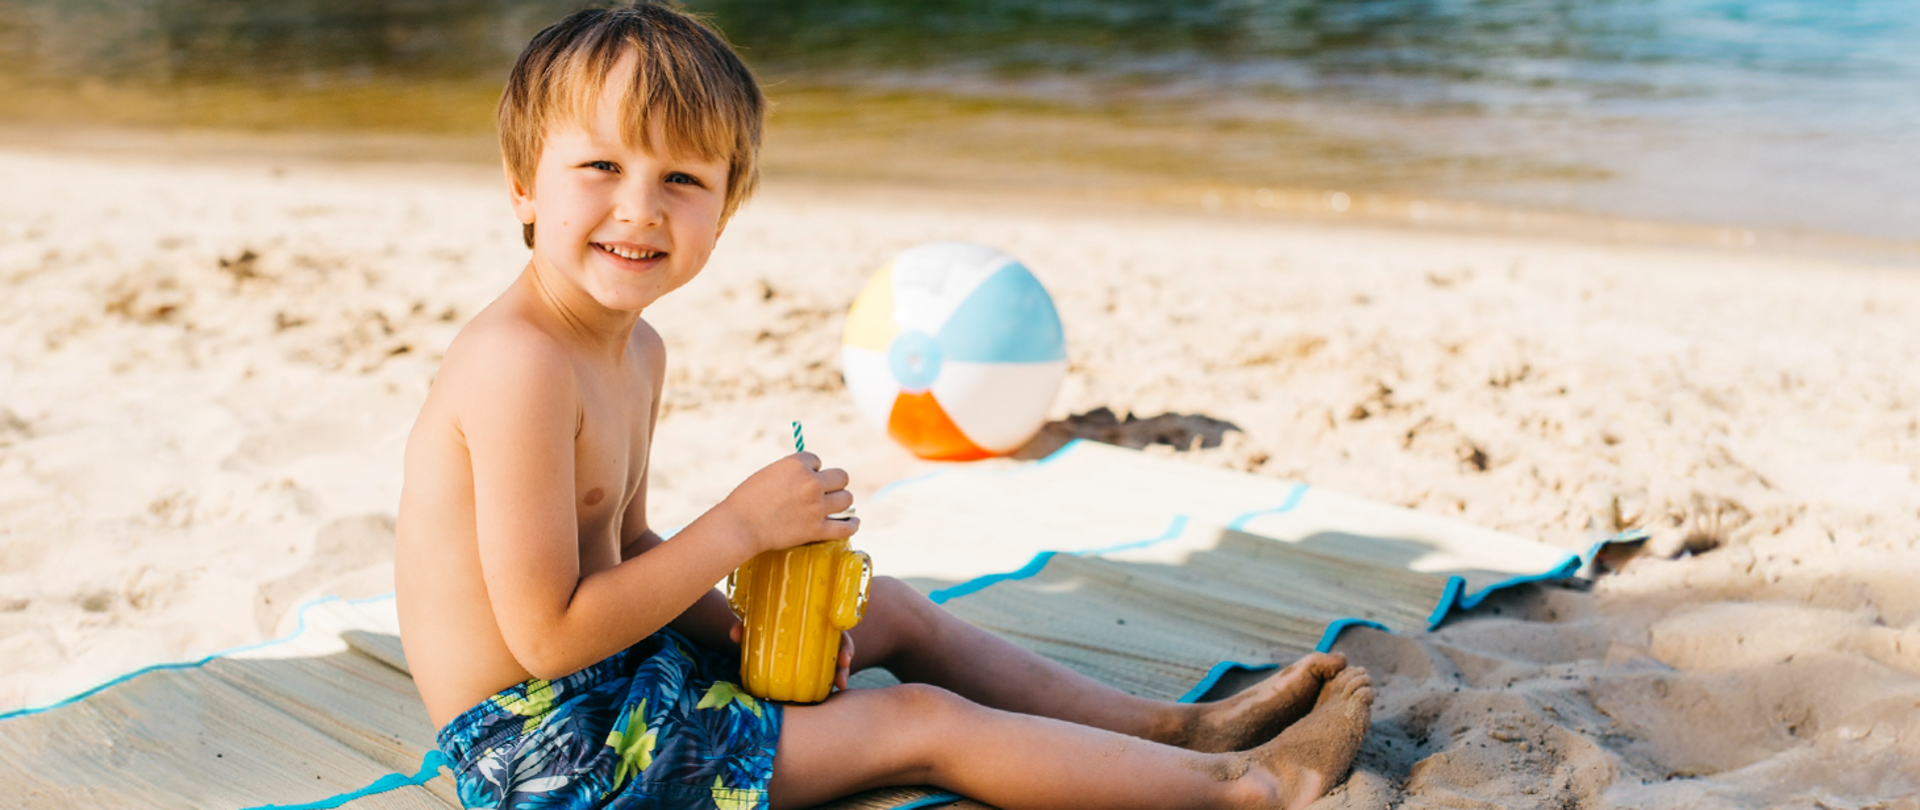 Uśmiechnięte dziecko siedzi na macie na piasku z piłką i pije soczek